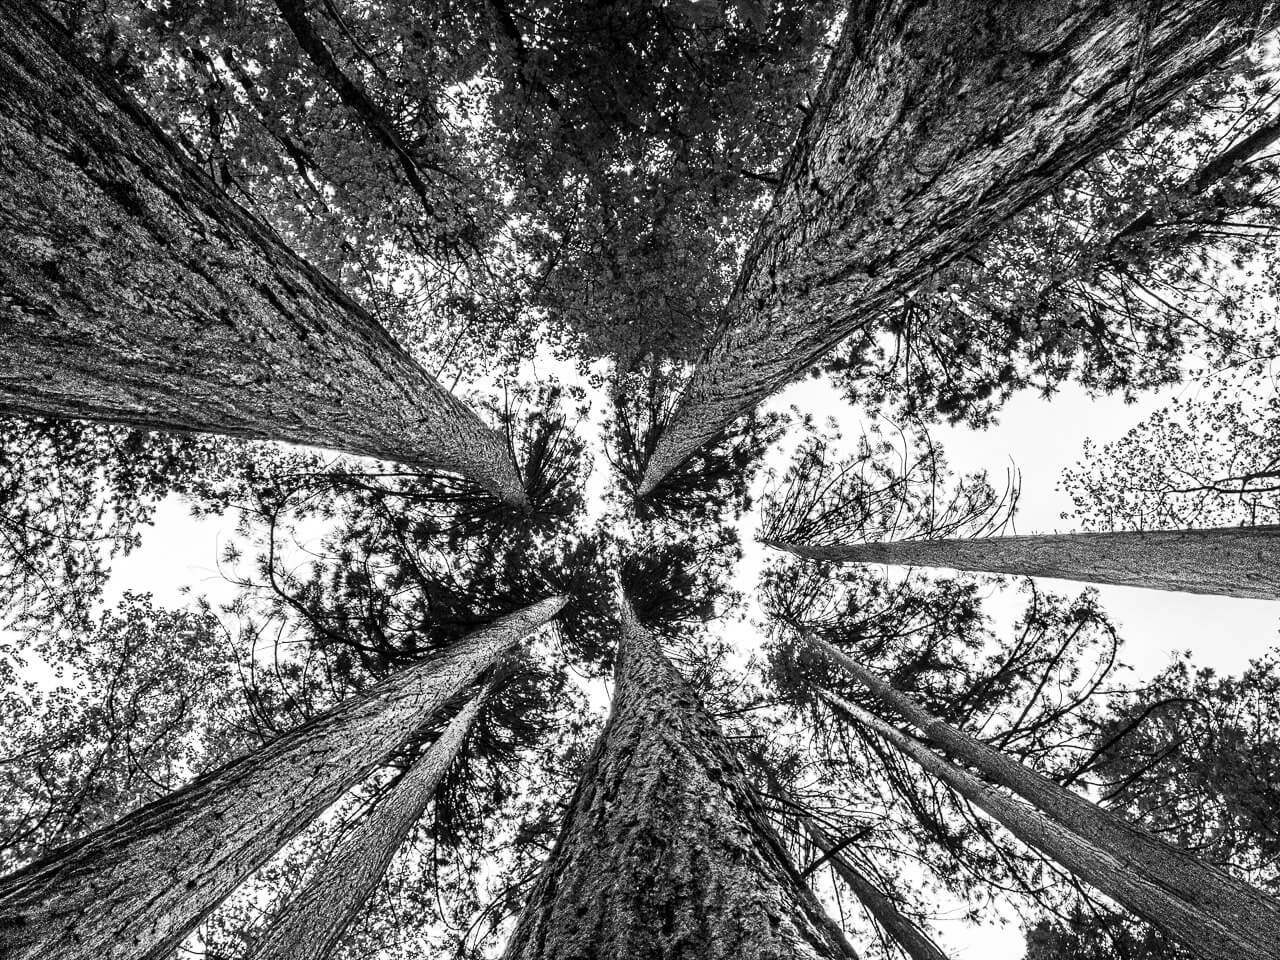 L'image numéro 13 de la série "Eien no Ki" transporte les spectateurs dans le Gouffre d'Enfer, où la nature sauvage révèle des arbres majestueux et harmonieux. En contemplant cette photographie, vous serez fasciné par l'équilibre et la puissance tranquille de ces géants de la forêt, une véritable ode à la beauté et à la magie de la nature.